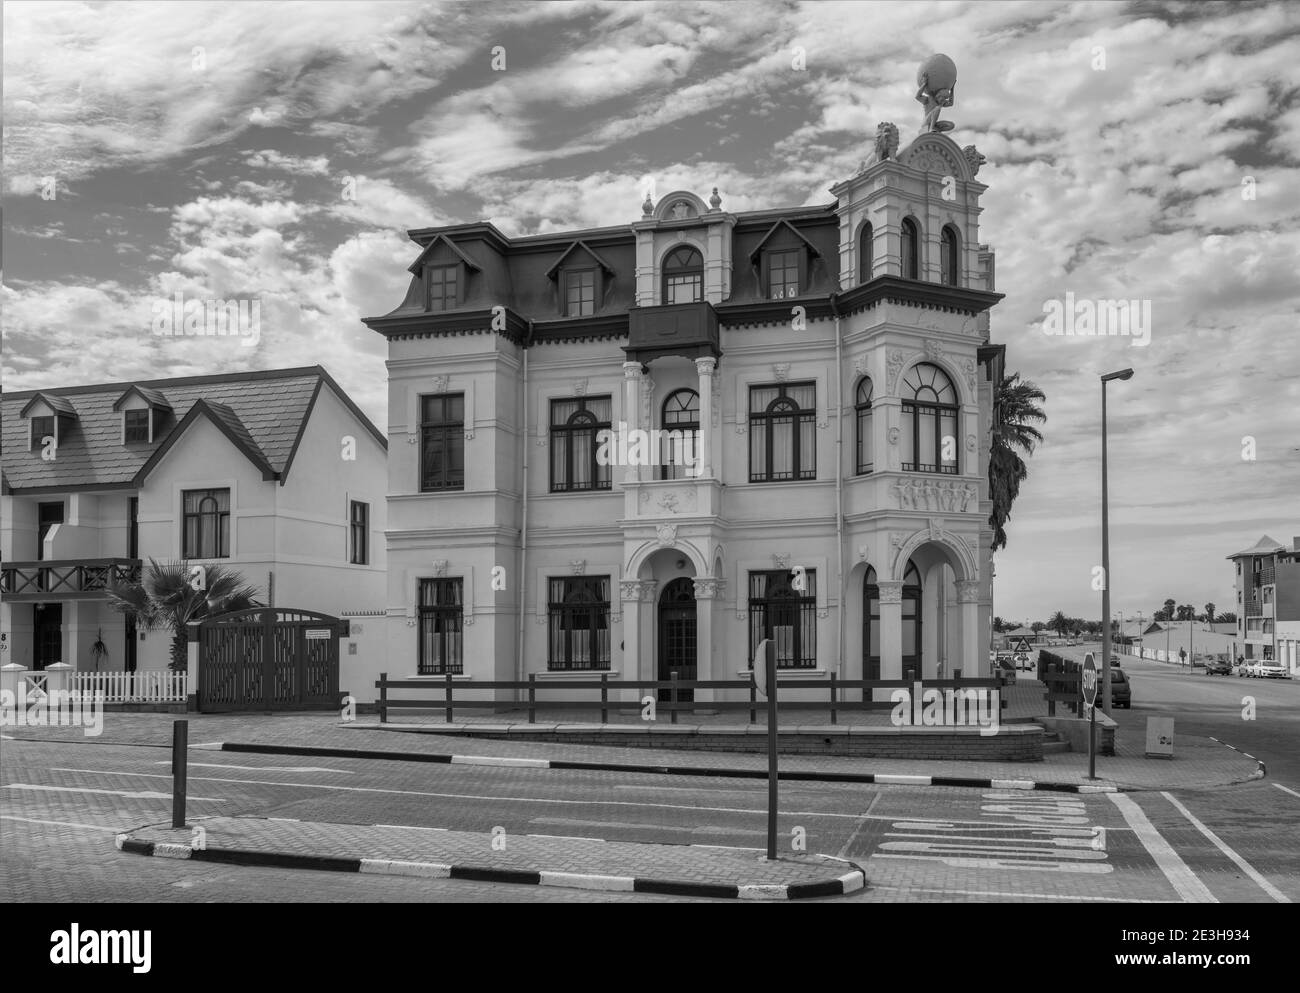 Ancien bâtiment colonial allemand en noir et blanc, Swakopmund, Namibie Banque D'Images